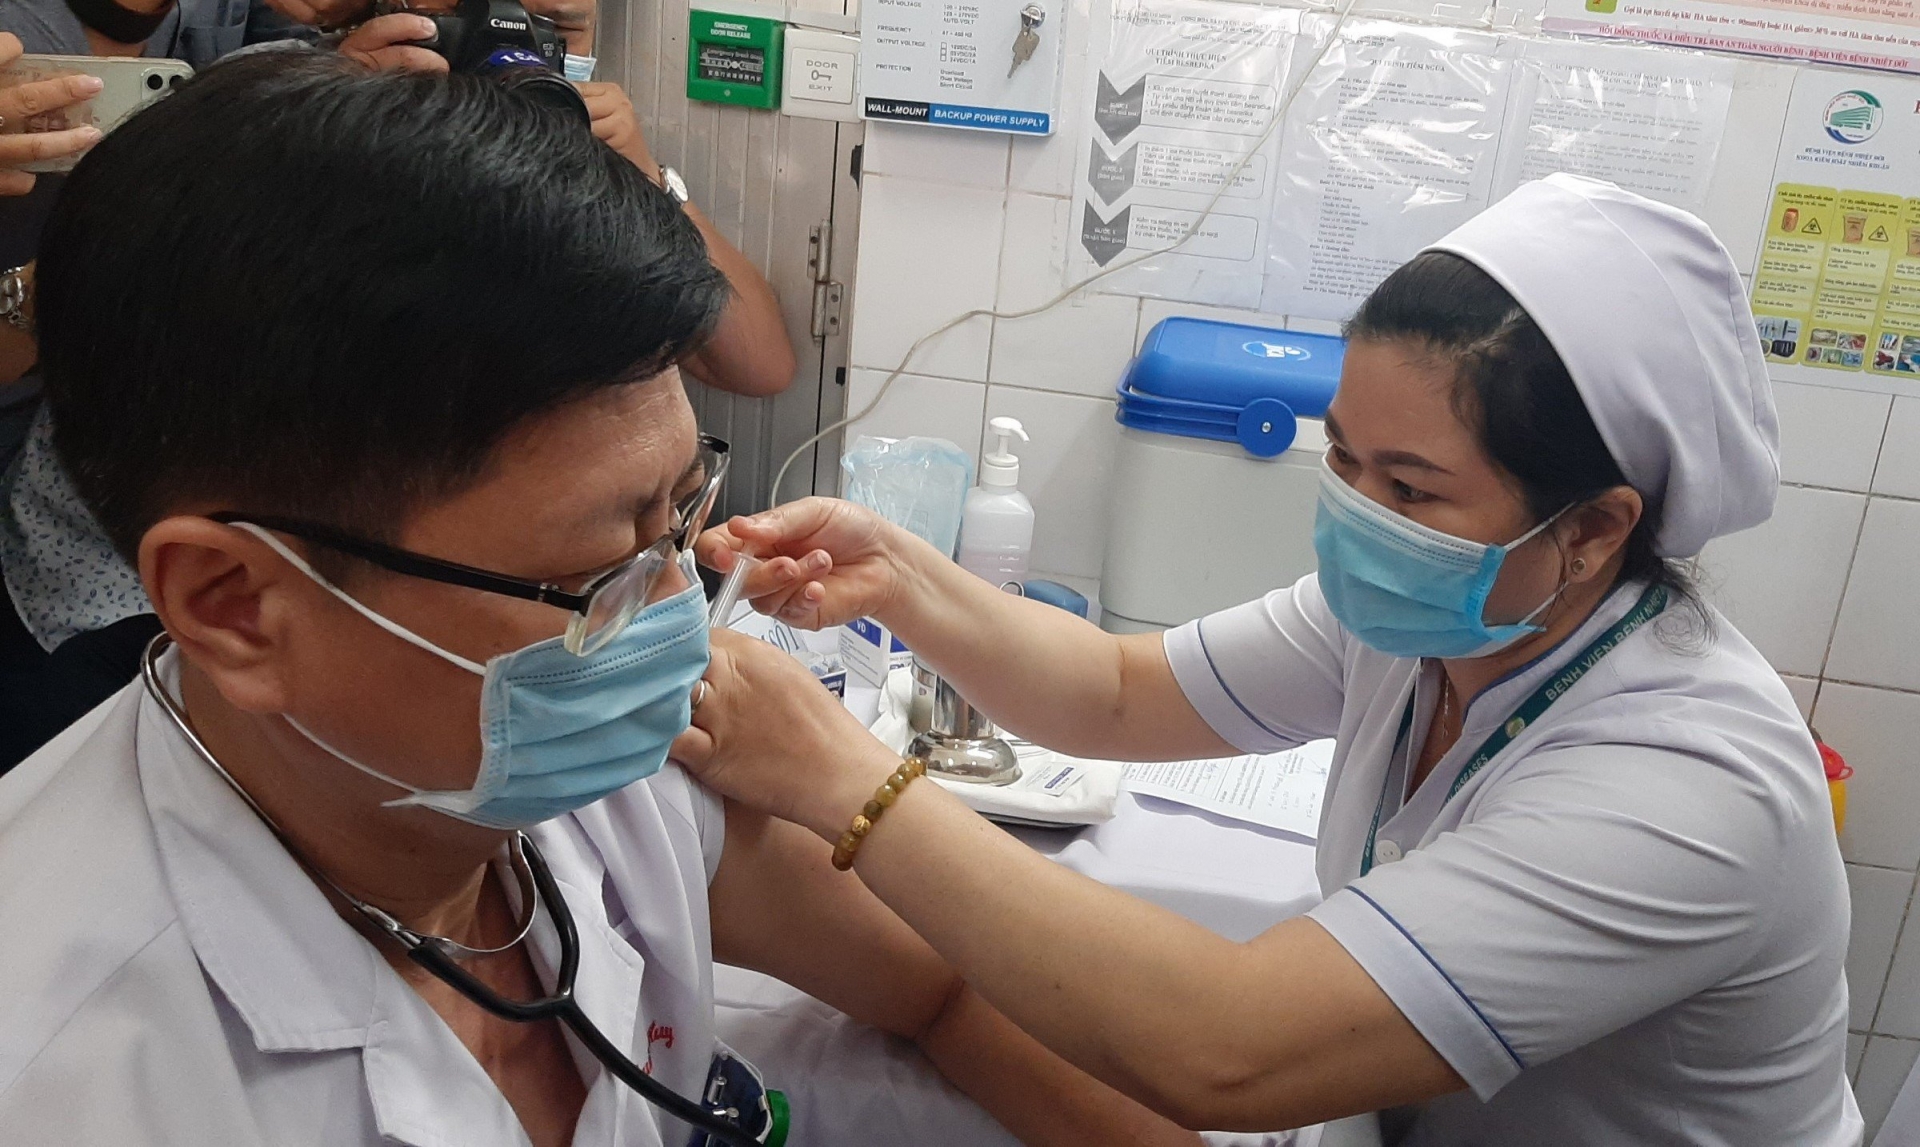 TP HCM đã bắt đầu triển khai tiêm vaccine Covid- 19 từ ngày 8/3